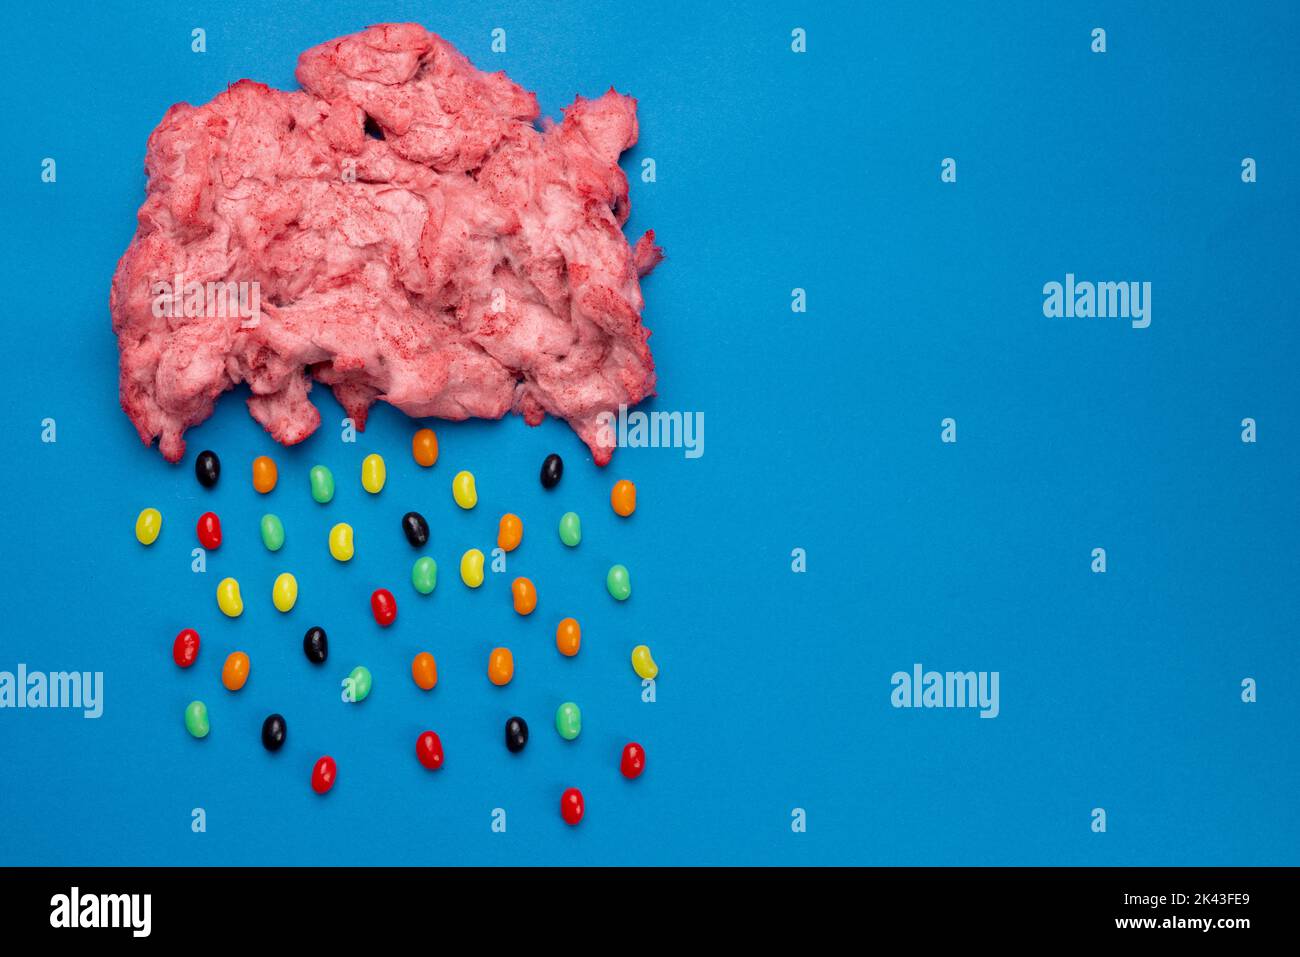 Immagine orizzontale di nuvola di caramelle fatte in casa rosa floss piovoso jelly beans, su blu con spazio copia Foto Stock